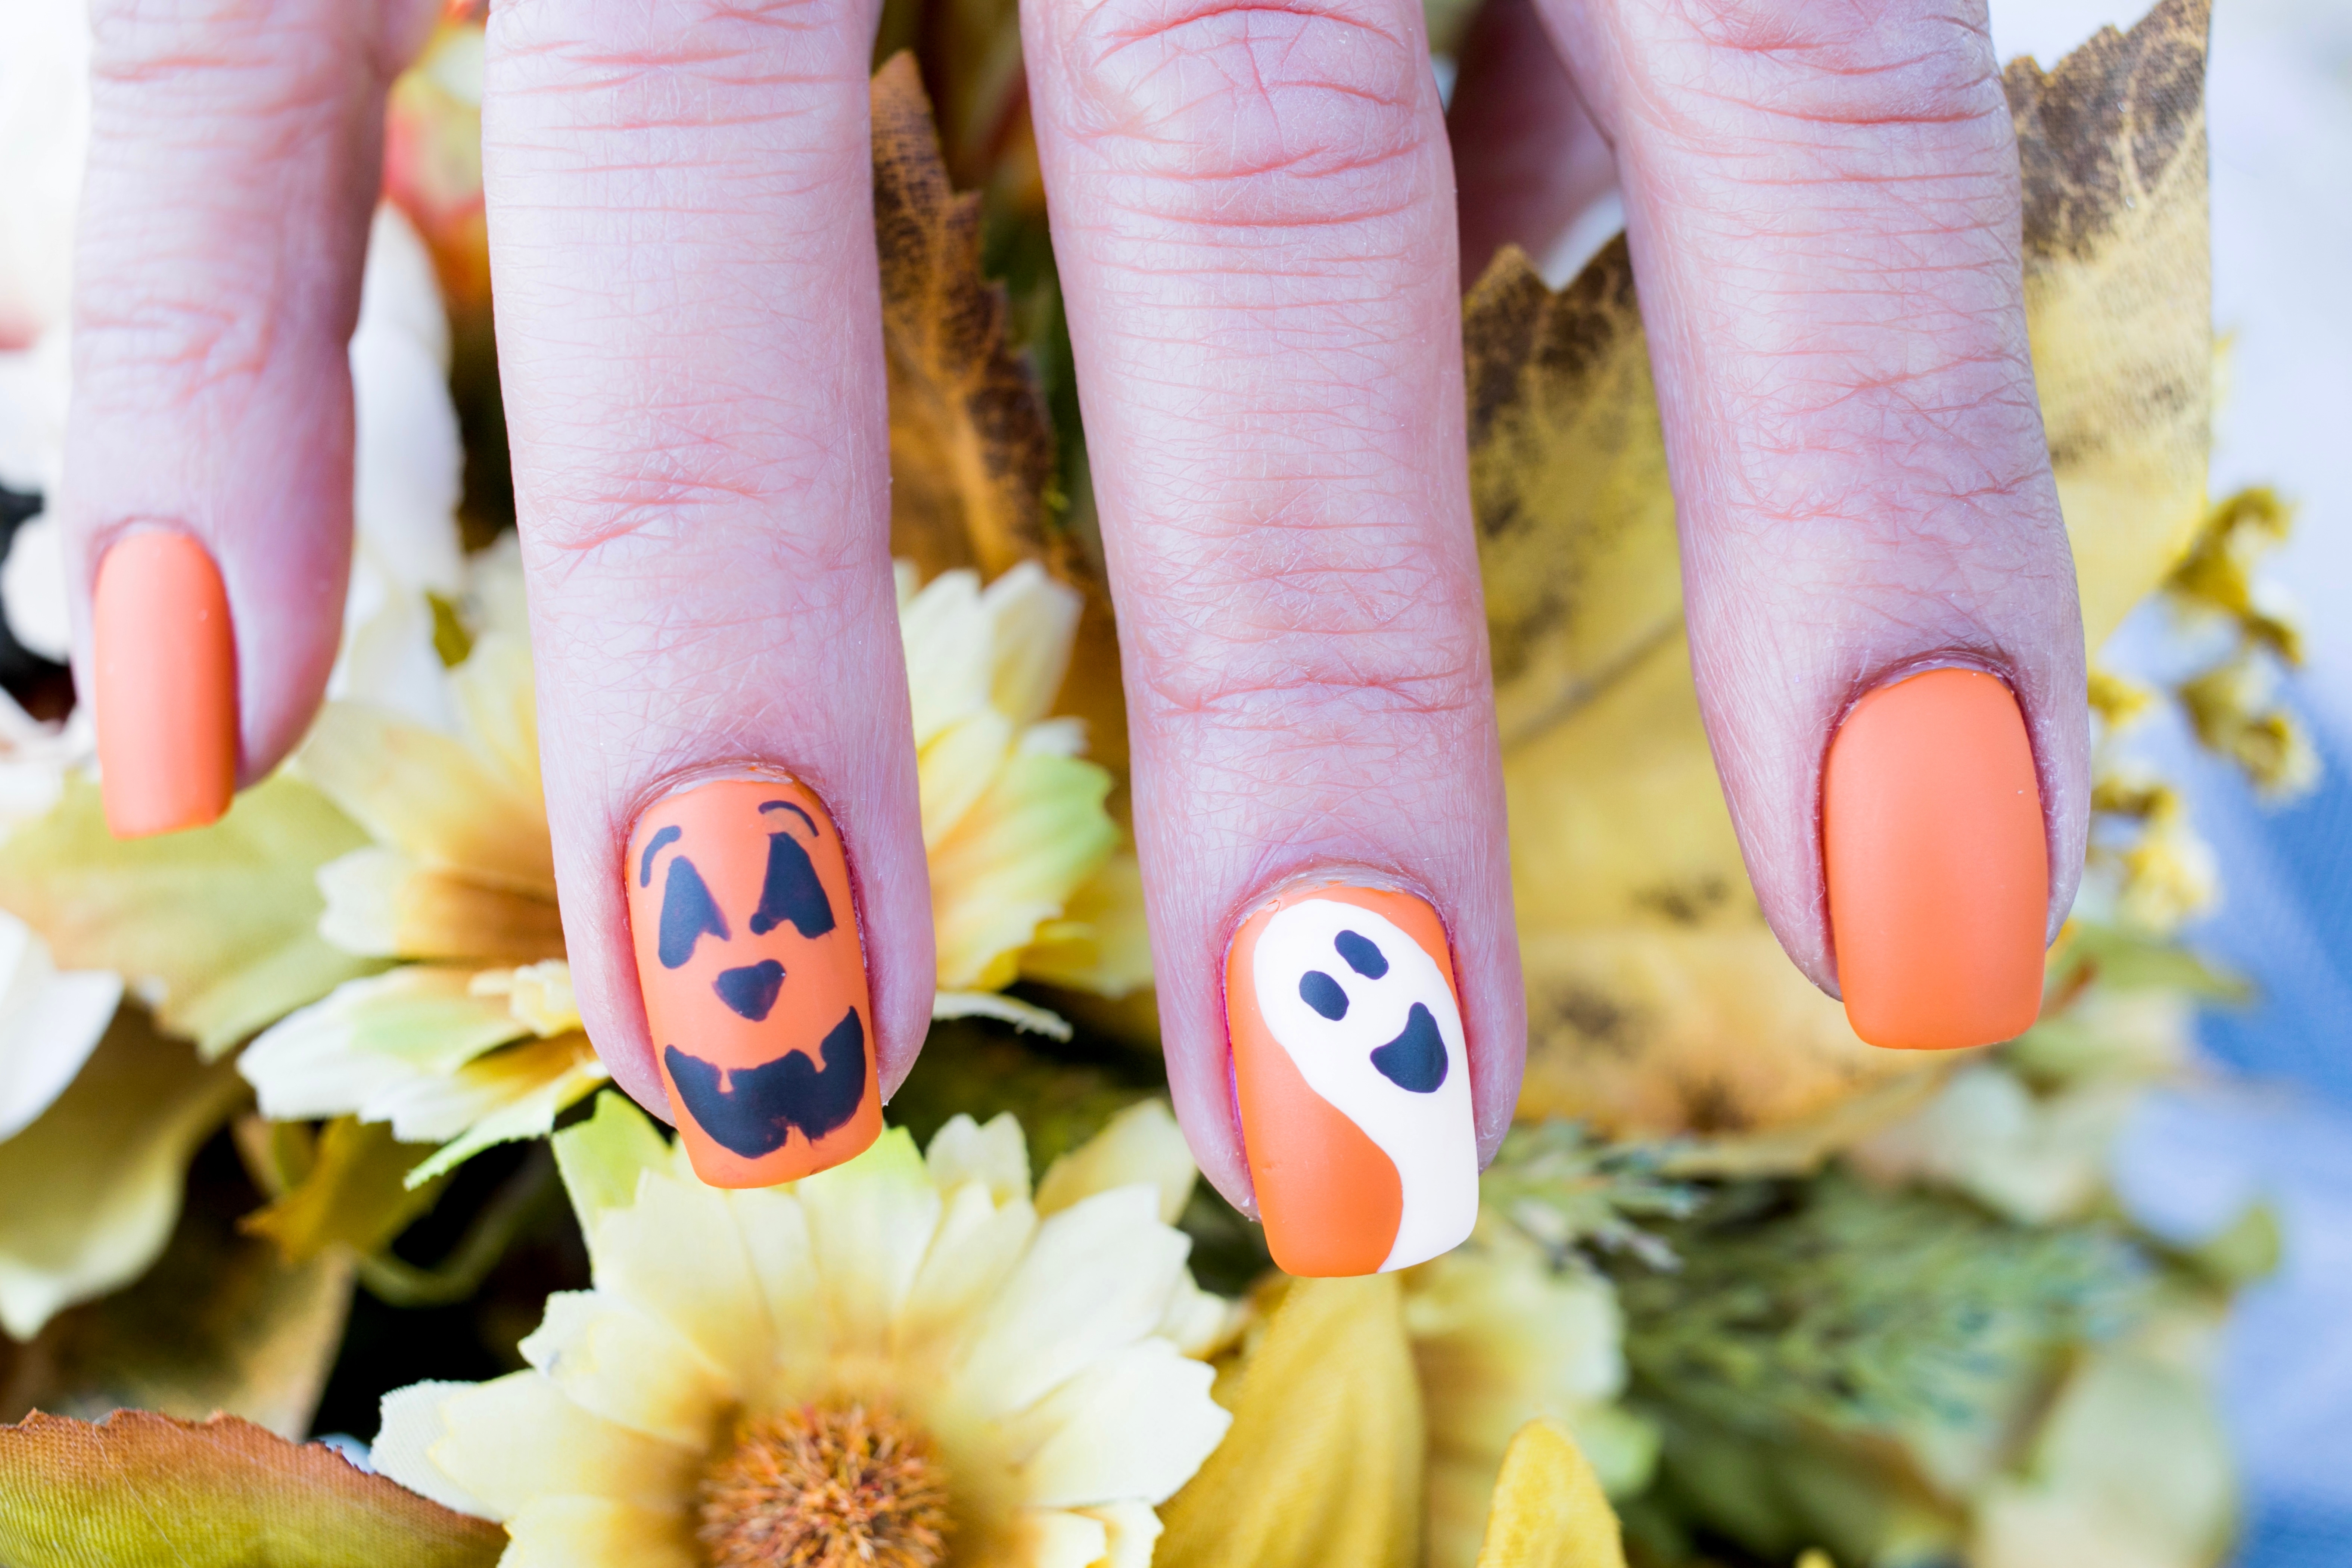 Modelos de uñas hermosos y "tenebrosos" que puedes usar en Halloween.